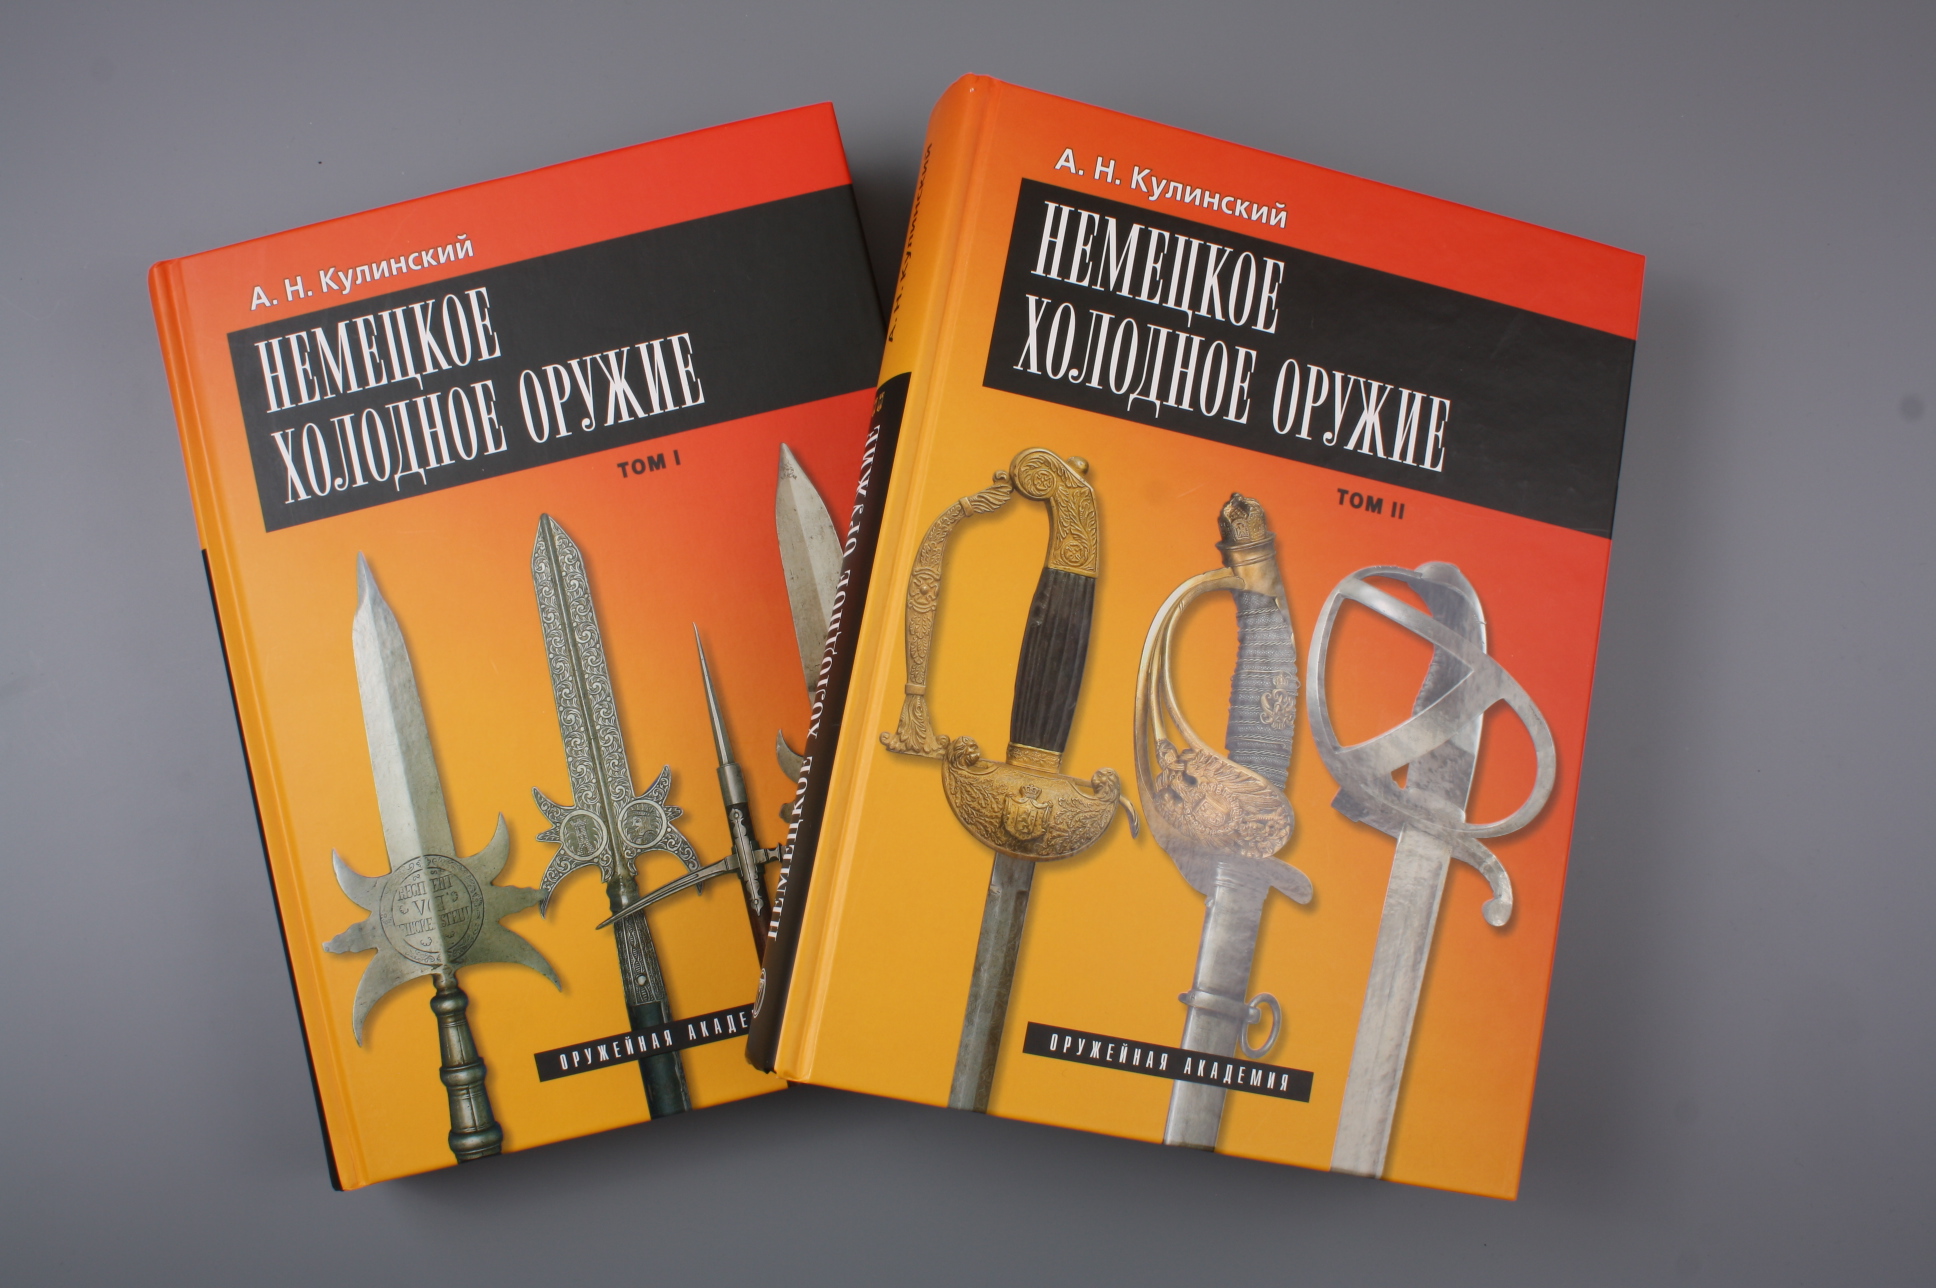 Книга "Немецкое холодное оружие" 2 тома, Россия.